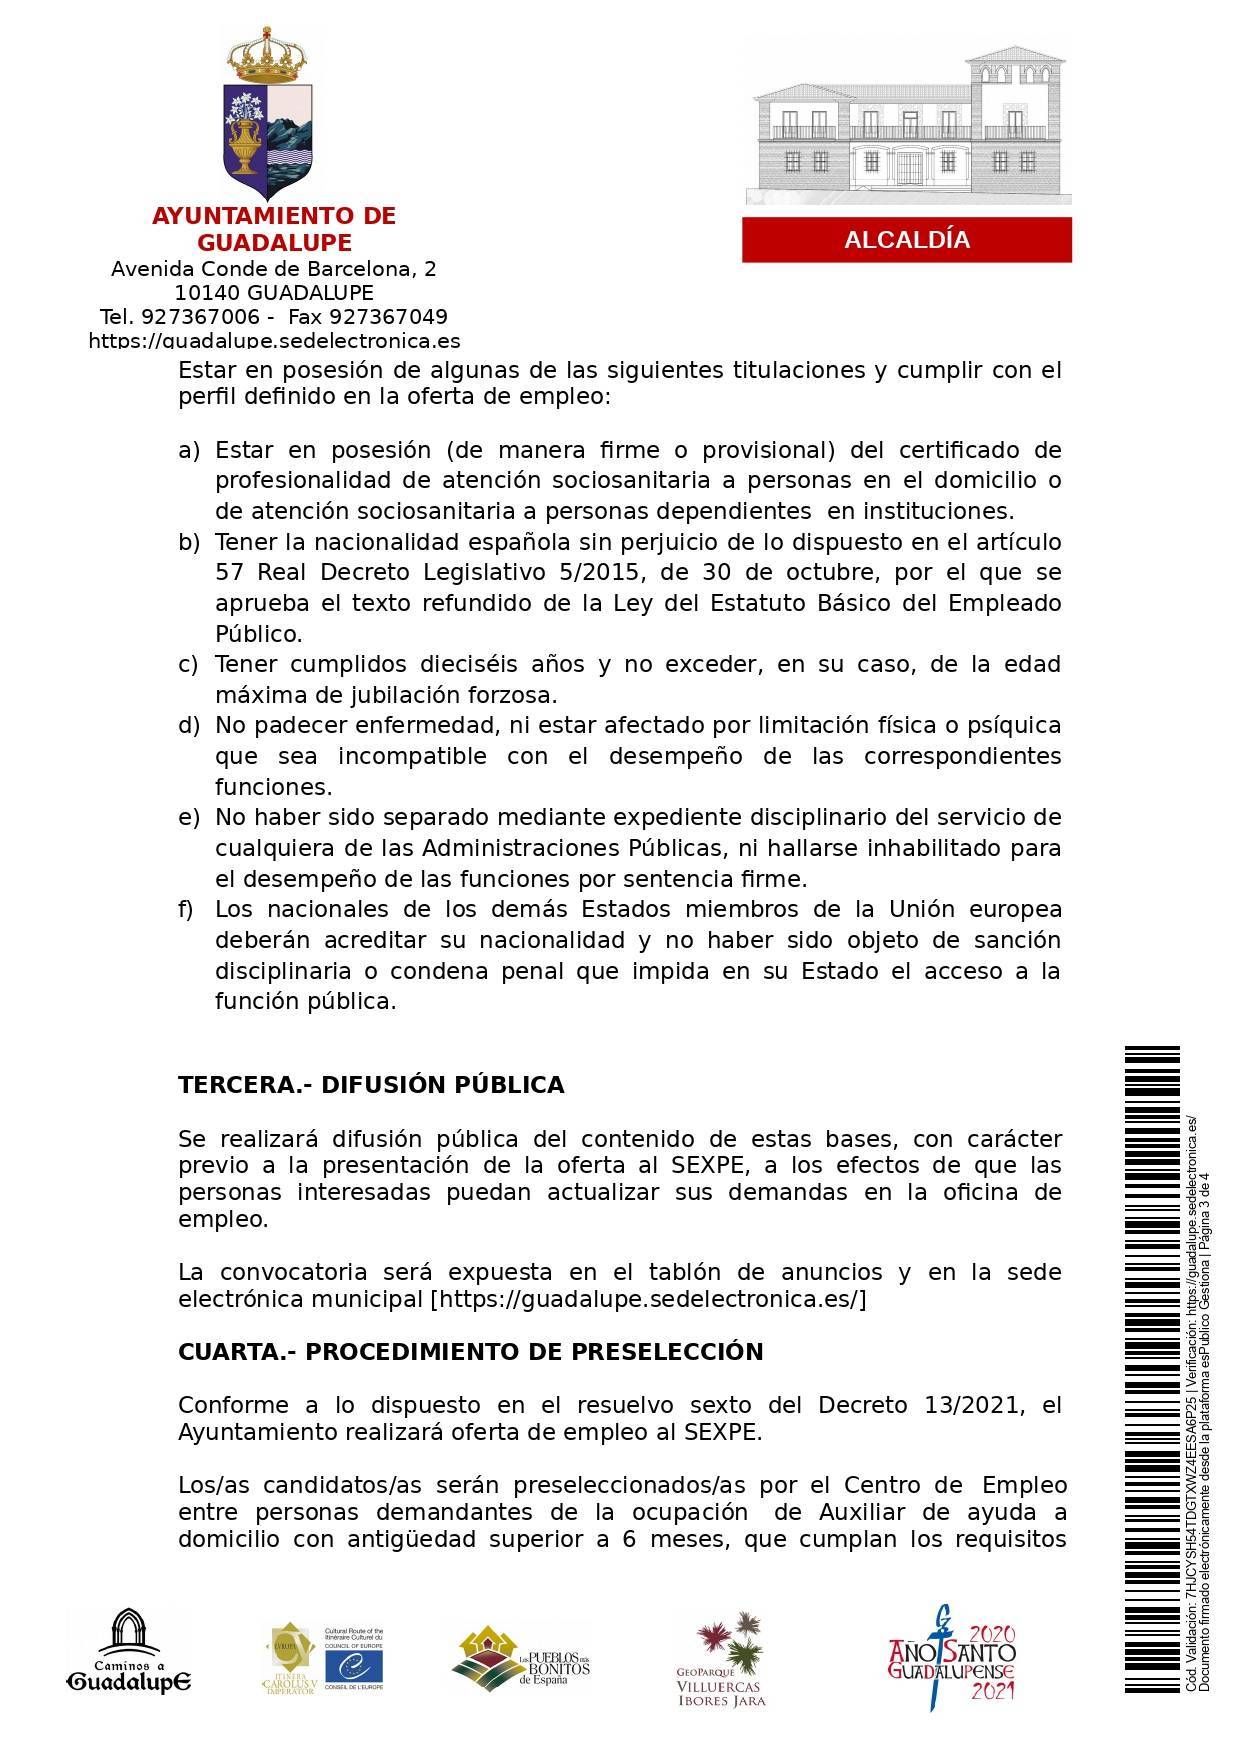 Auxiliar de ayuda a domicilio (2021) - Guadalupe (Cáceres) 3